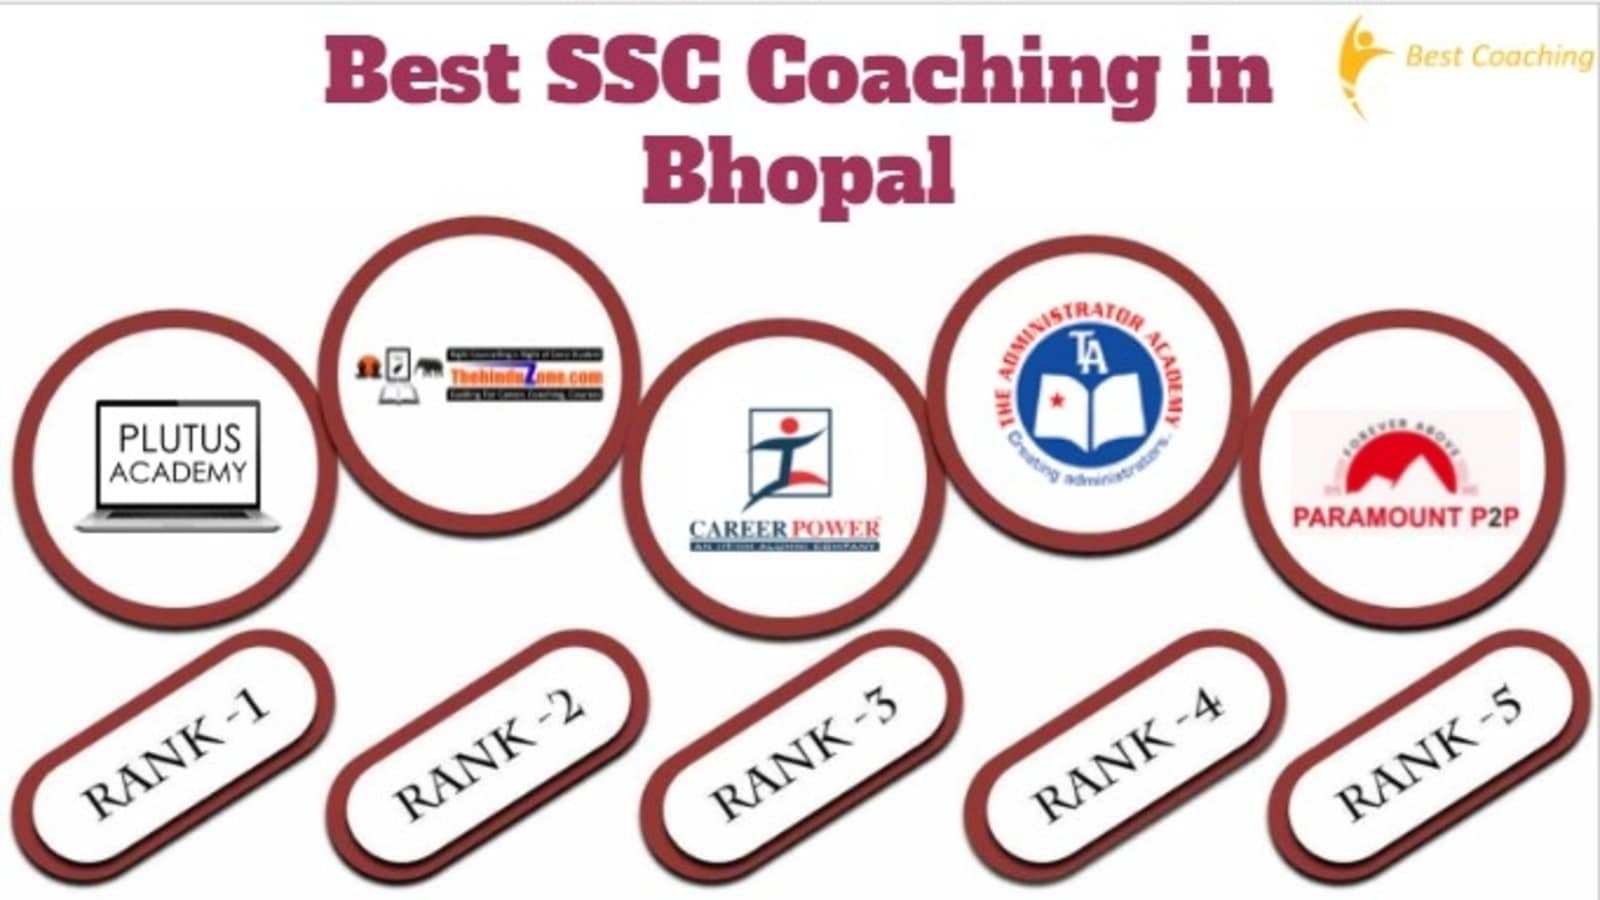 Best SSC Coaching in Bhopal